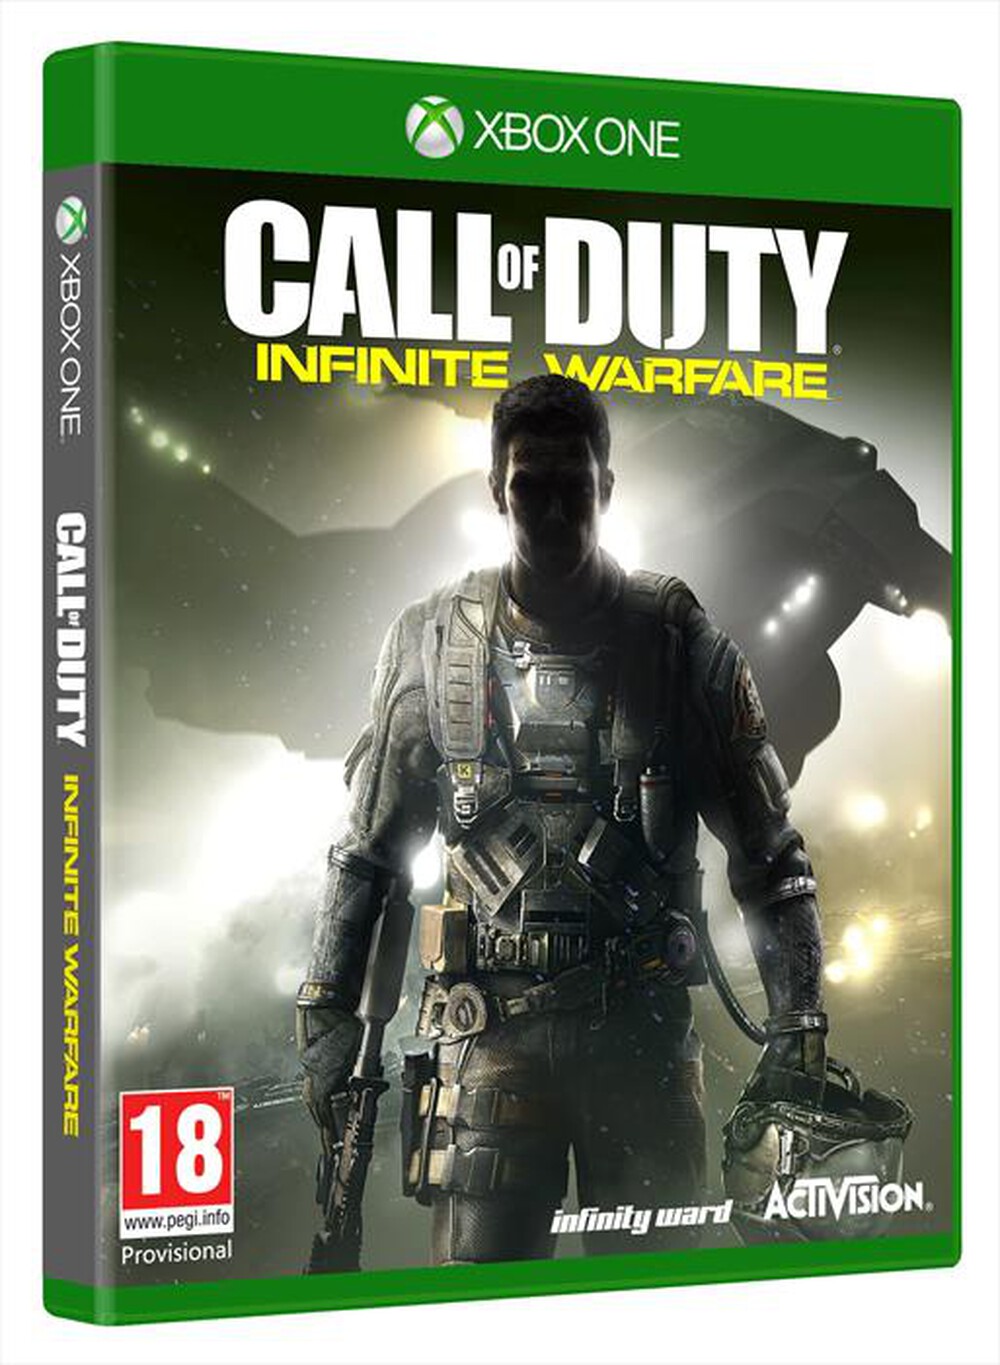 "ACTIVISION-BLIZZARD - Call of Duty: Infinite Warfare Xbox One"